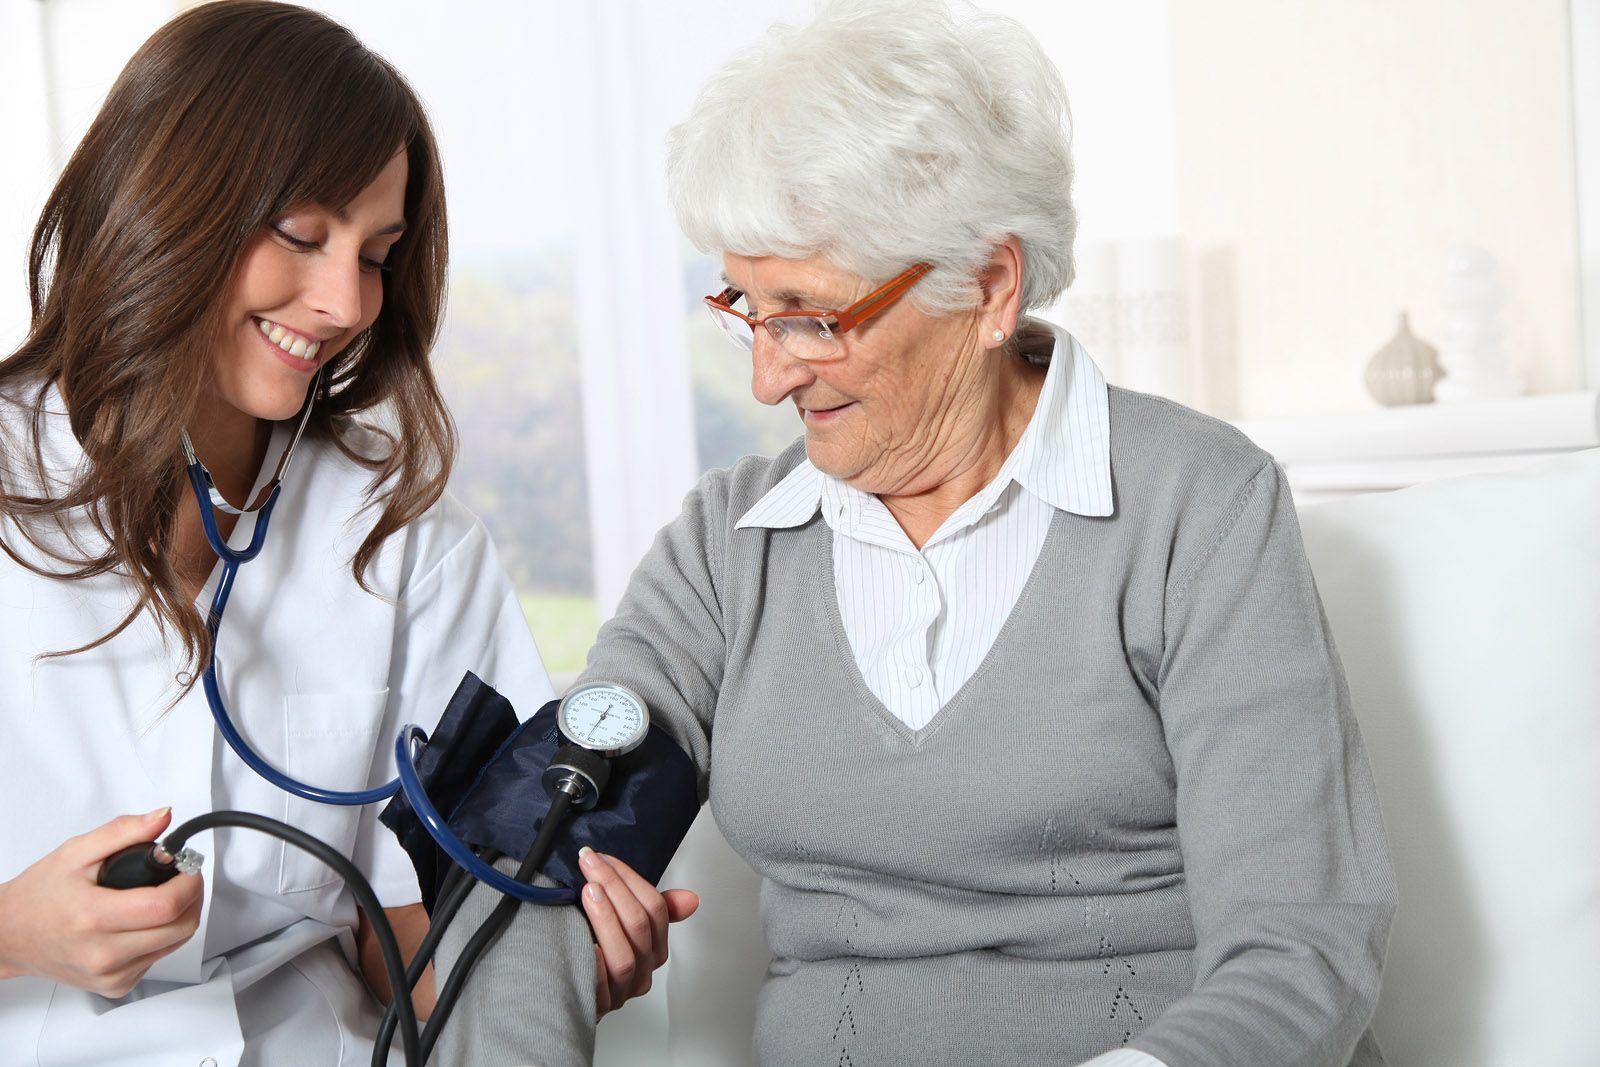 La toma de presión arterial no se hace en condiciones adecuadas, según la SEMGla vida hasta 3 años, según un estudio